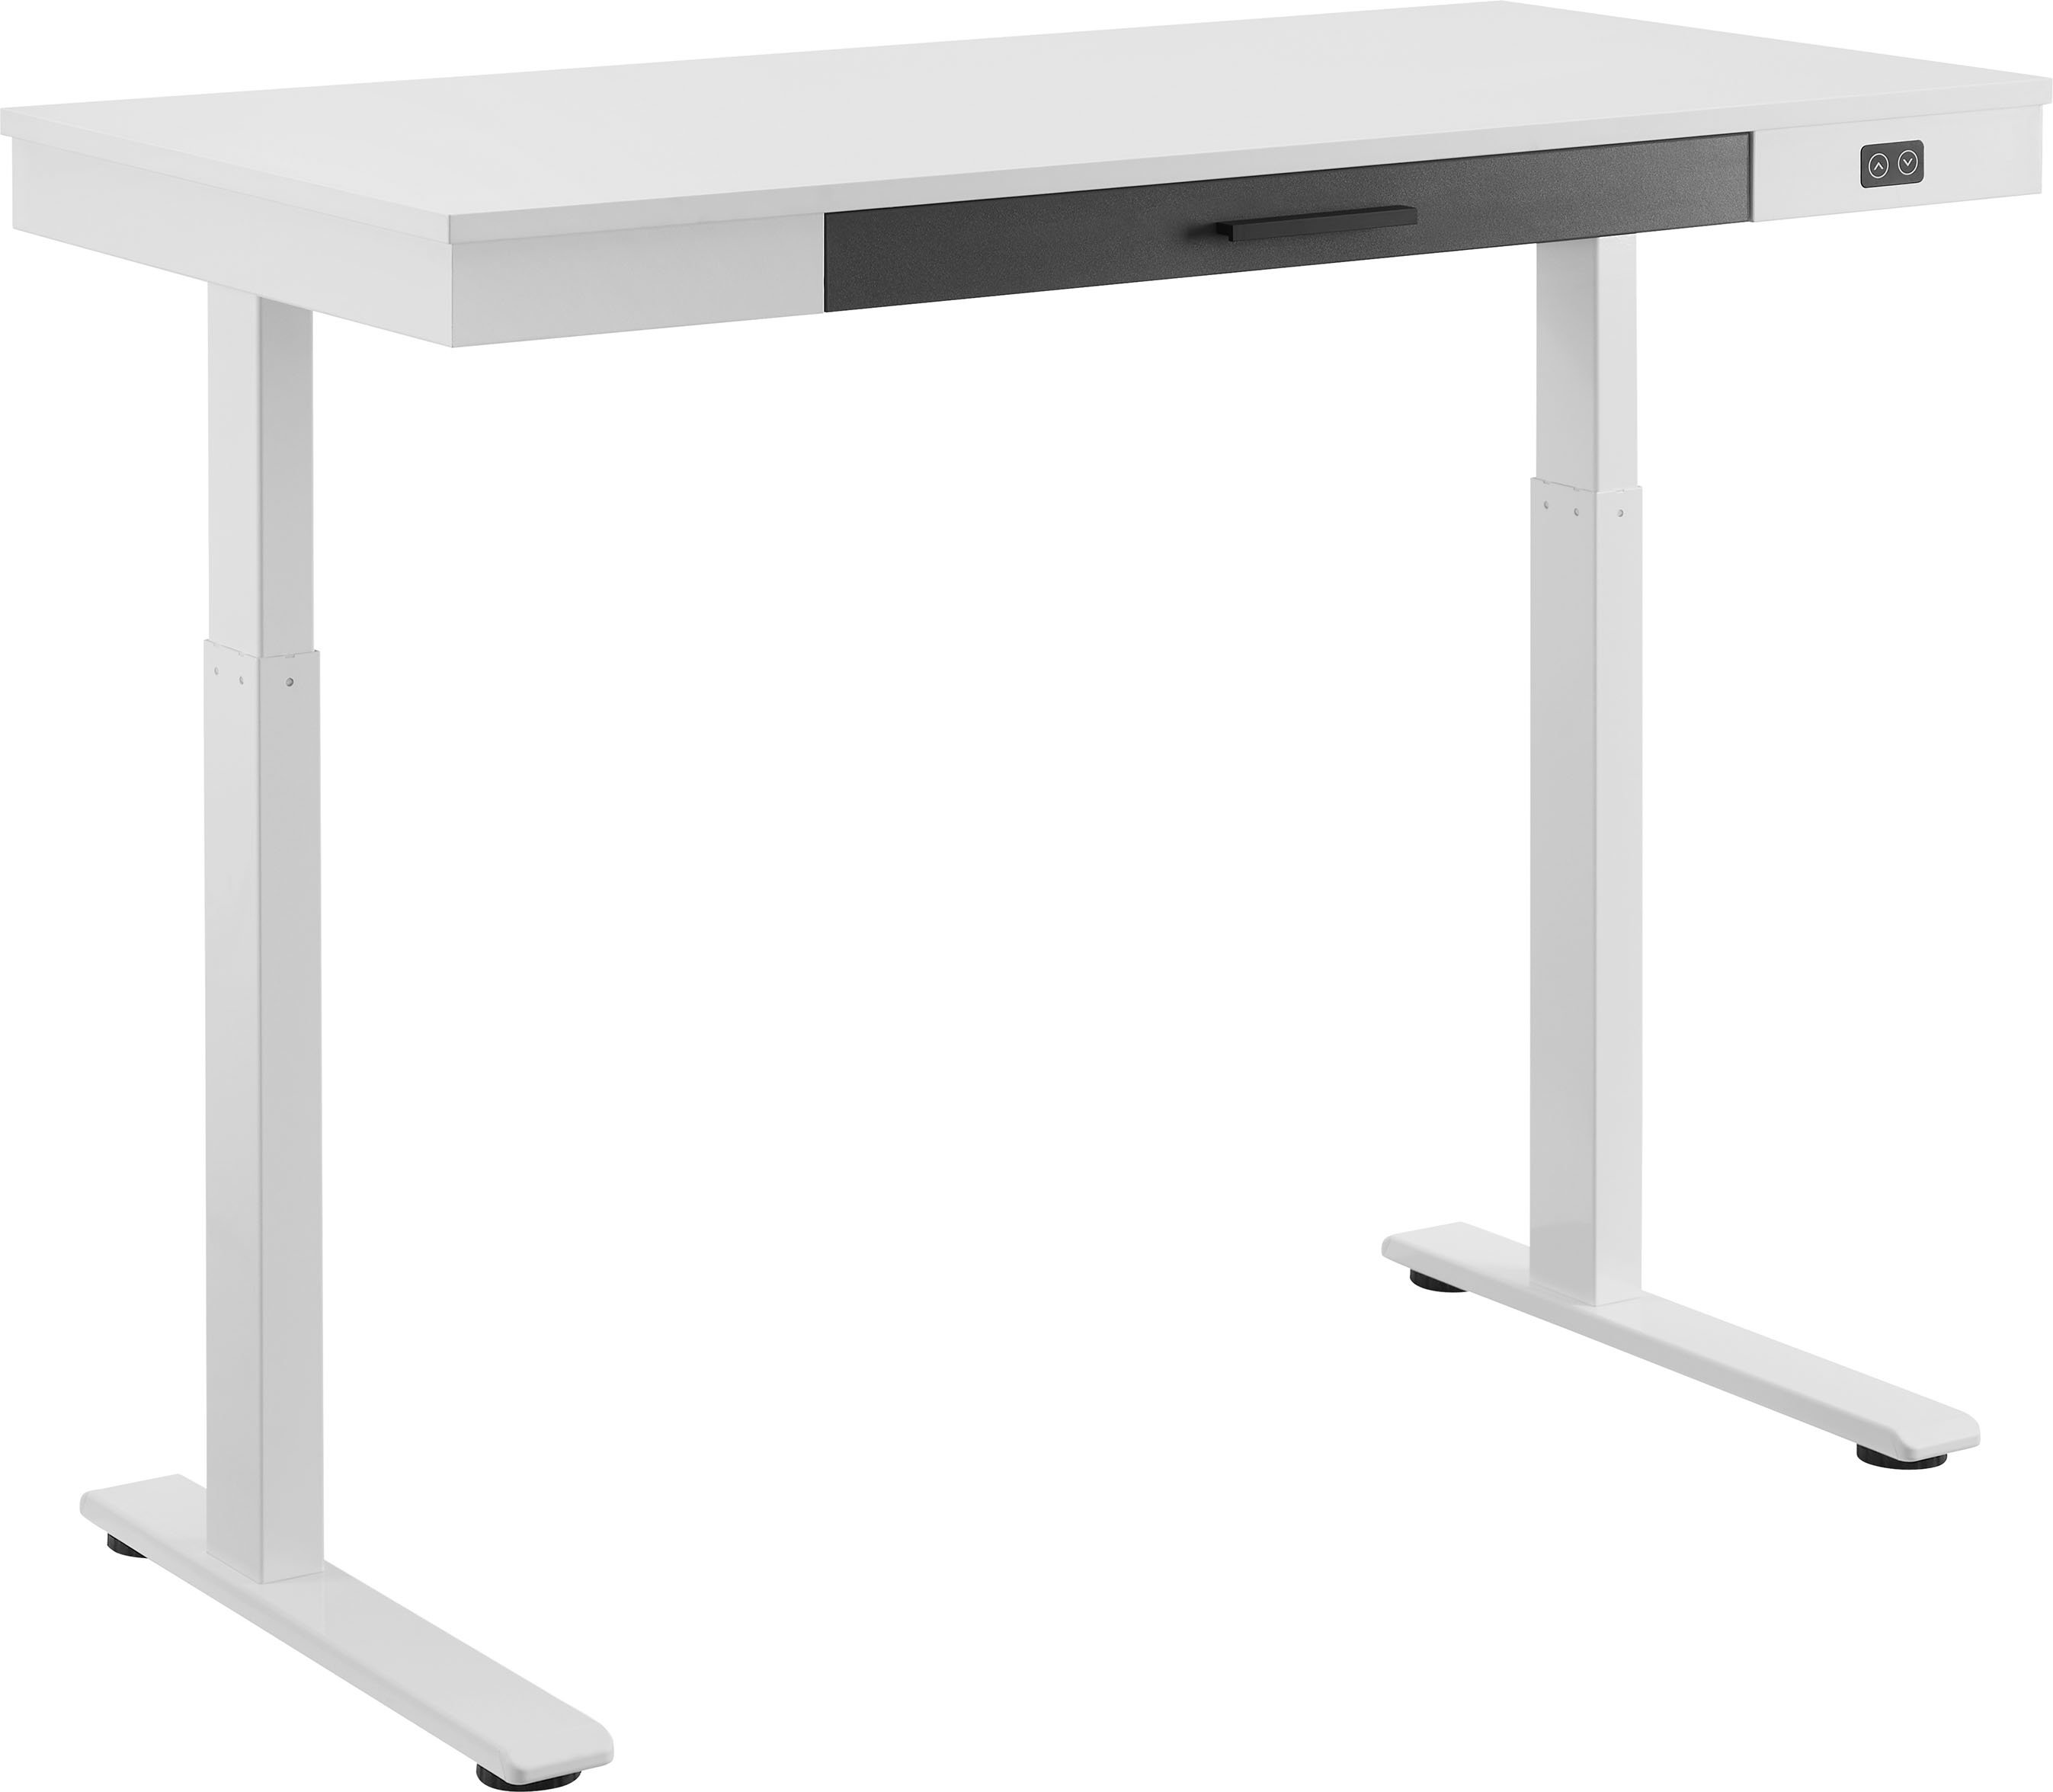 Angle View: LapGear - Compact Lap Desk for 15" Laptop - Rose Quartz